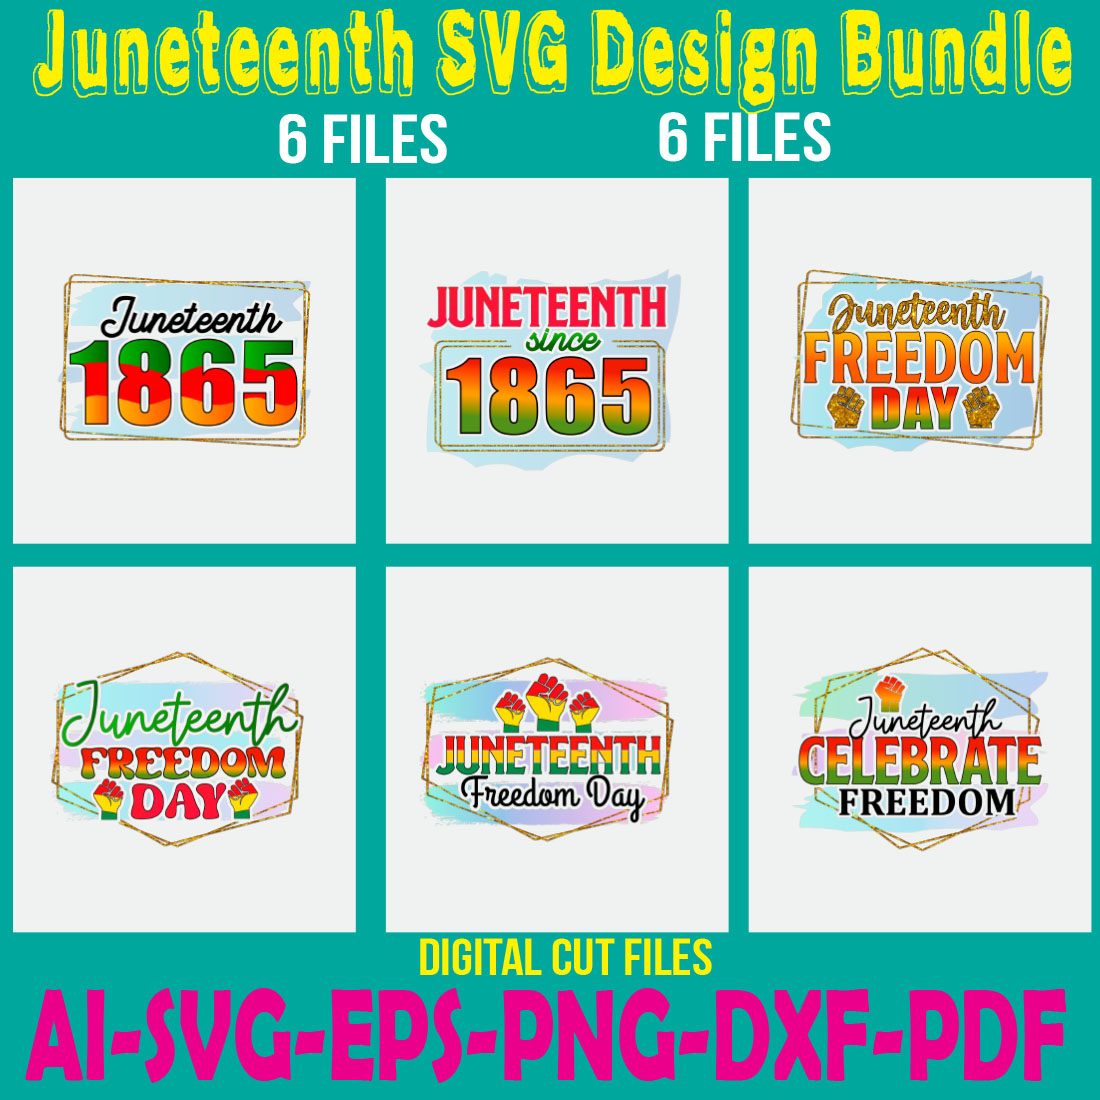 Juneteenth SVG Design Bundle cover image.